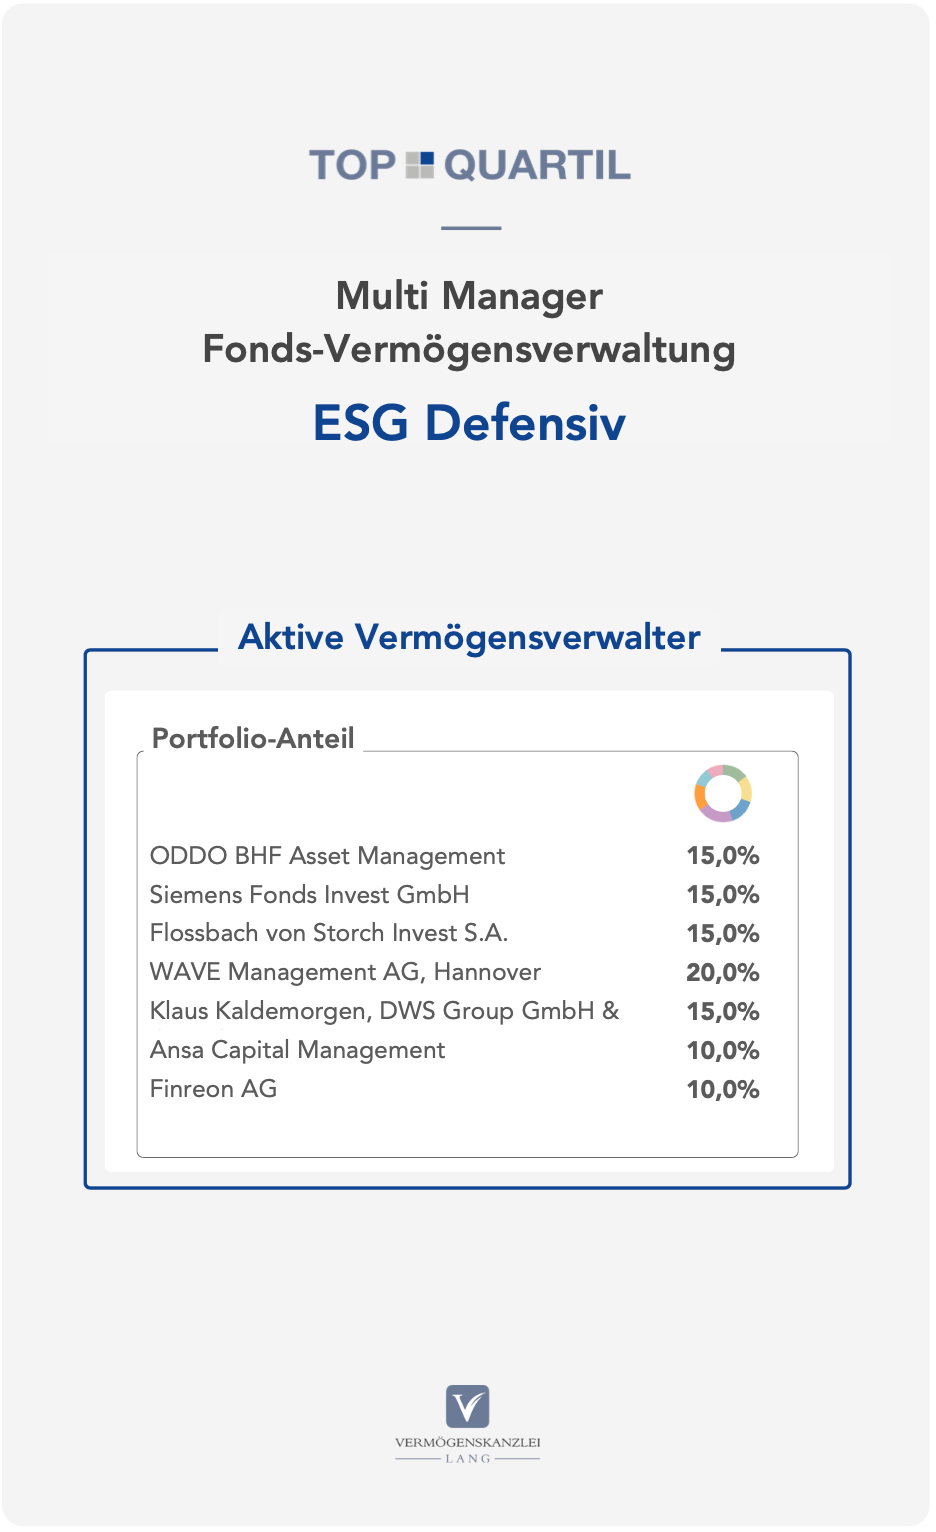 Fondsportfolio: TOP QUARTIL Multi Manager Fonds-Vermögensverwaltung [ESG Defensiv] mit Art. 8 und/oder Art. 9 SFDR Fonds und niedrigem bis neutralem CO2-Fußabdruck